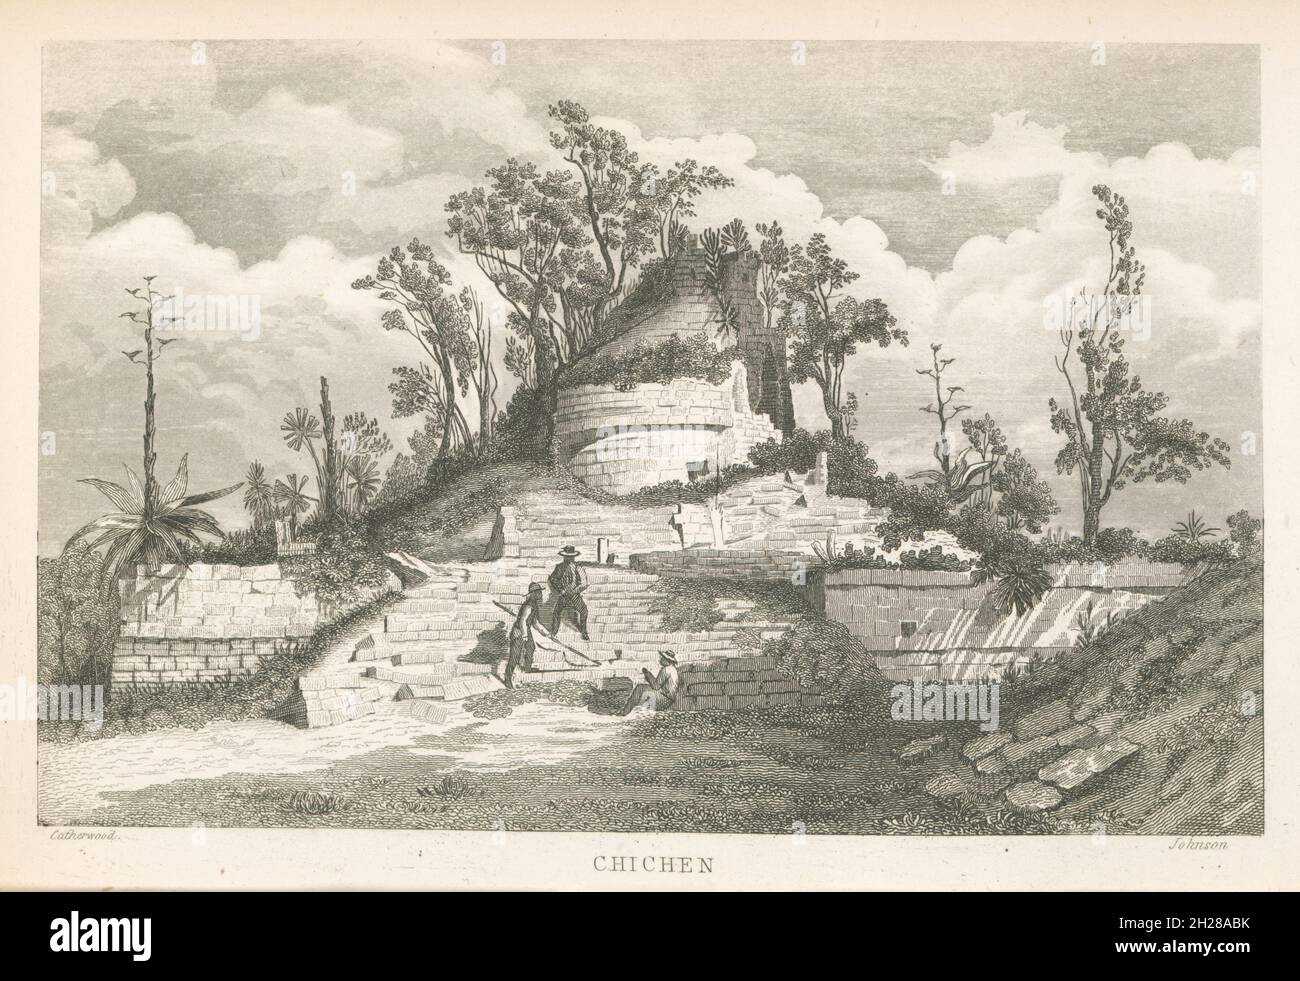 Kreisförmiges astronomisches Maya-Observatorium (El Caracol) in Chichen Itza, Yucatan, Mexiko, Stich von Frederick Catherwood aus dem Buch Incidents of Travel in Yucatan von John Lloyd Stephens, das erstmals 1841 veröffentlicht wurde Stockfoto